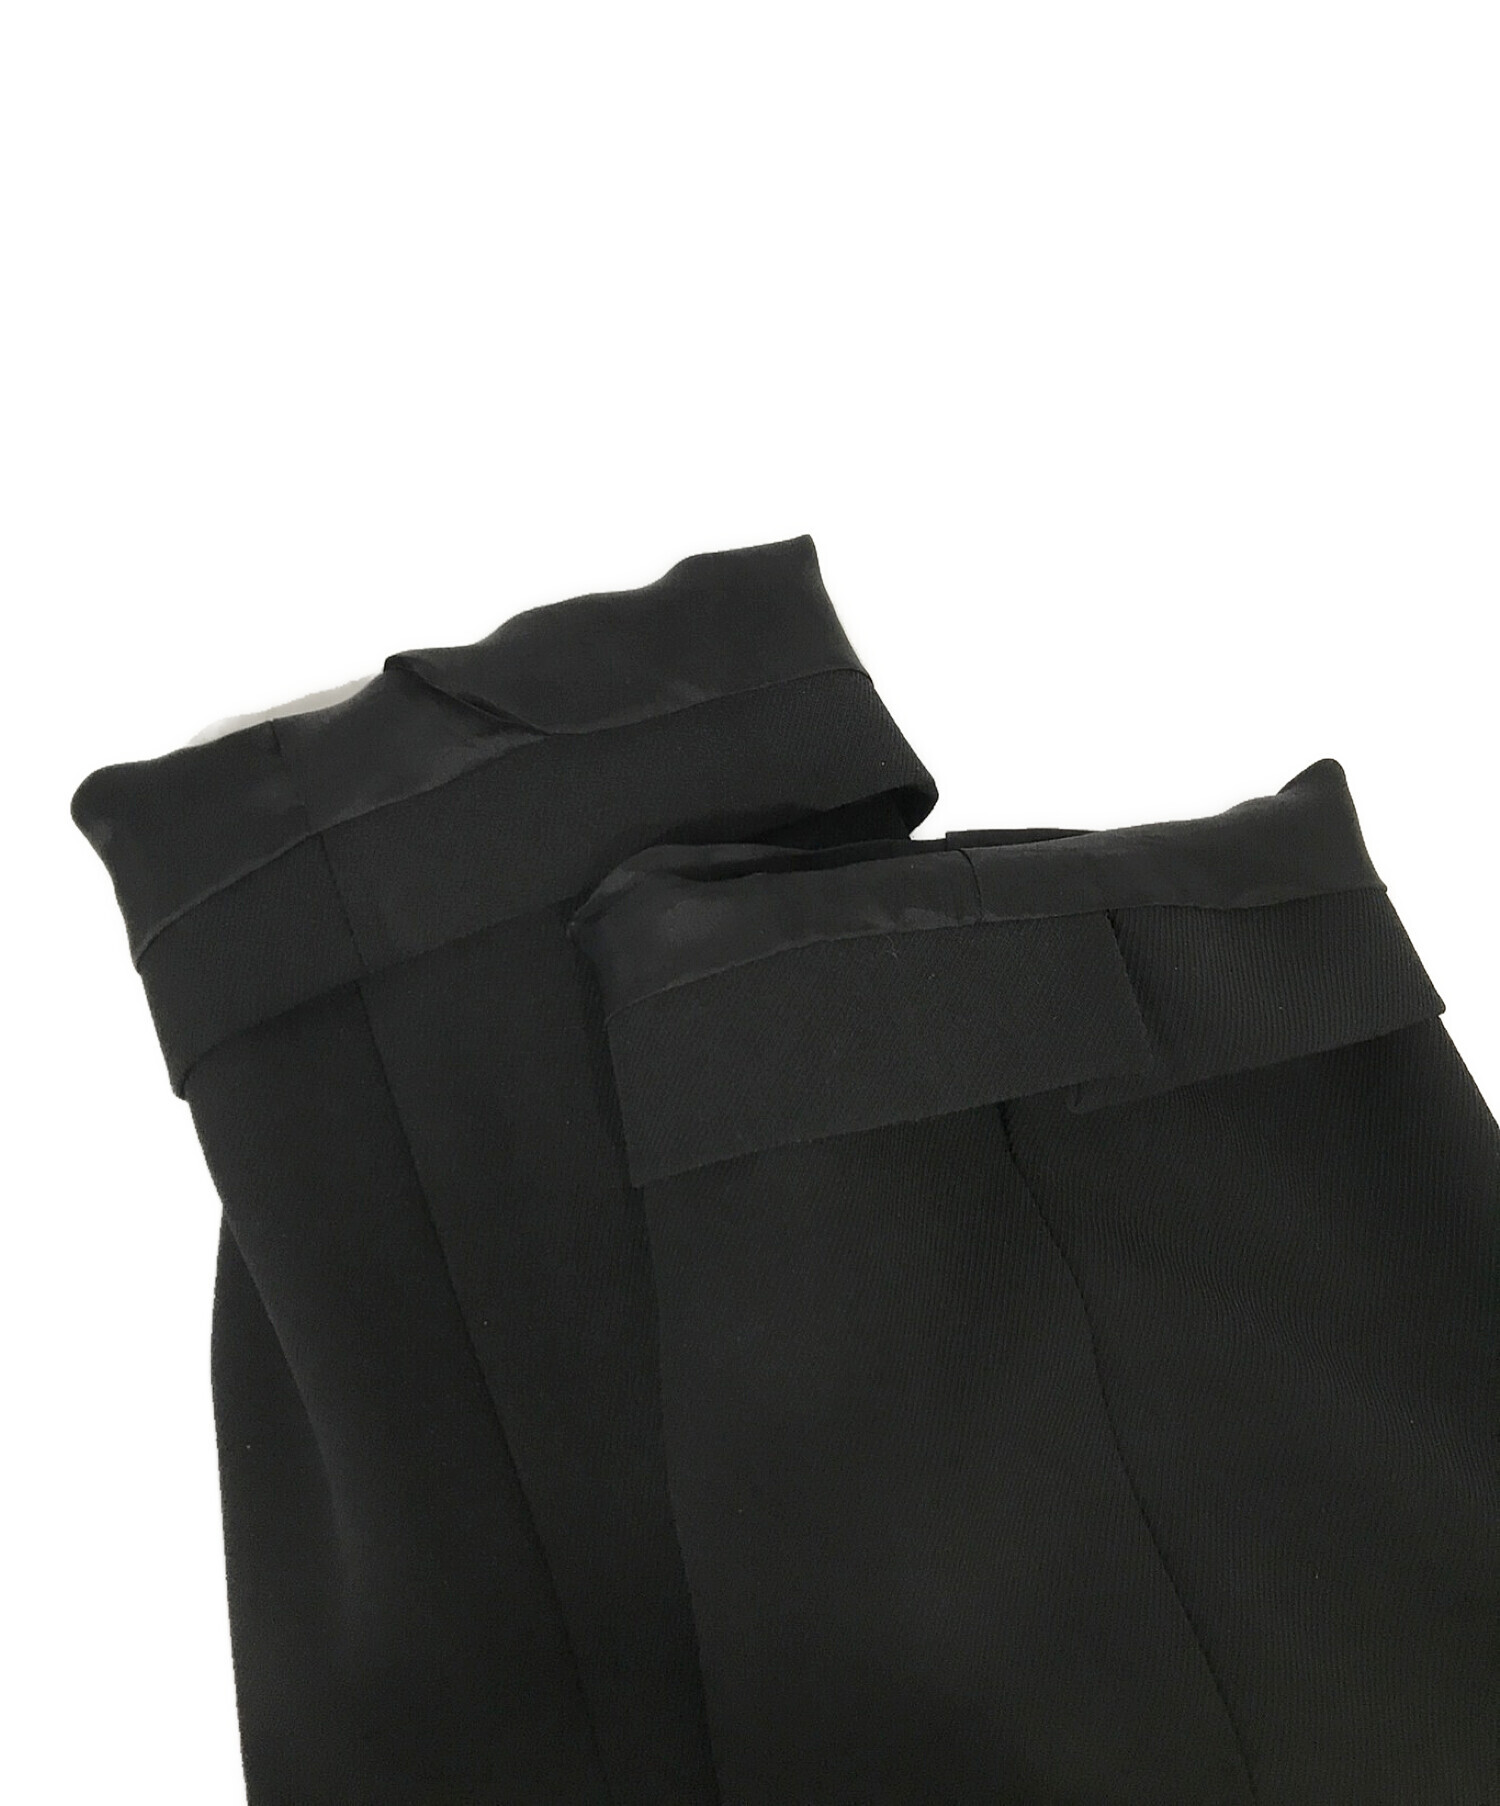 CULLNI (クルニ) テーラードジャケット ブラック サイズ:表記無し